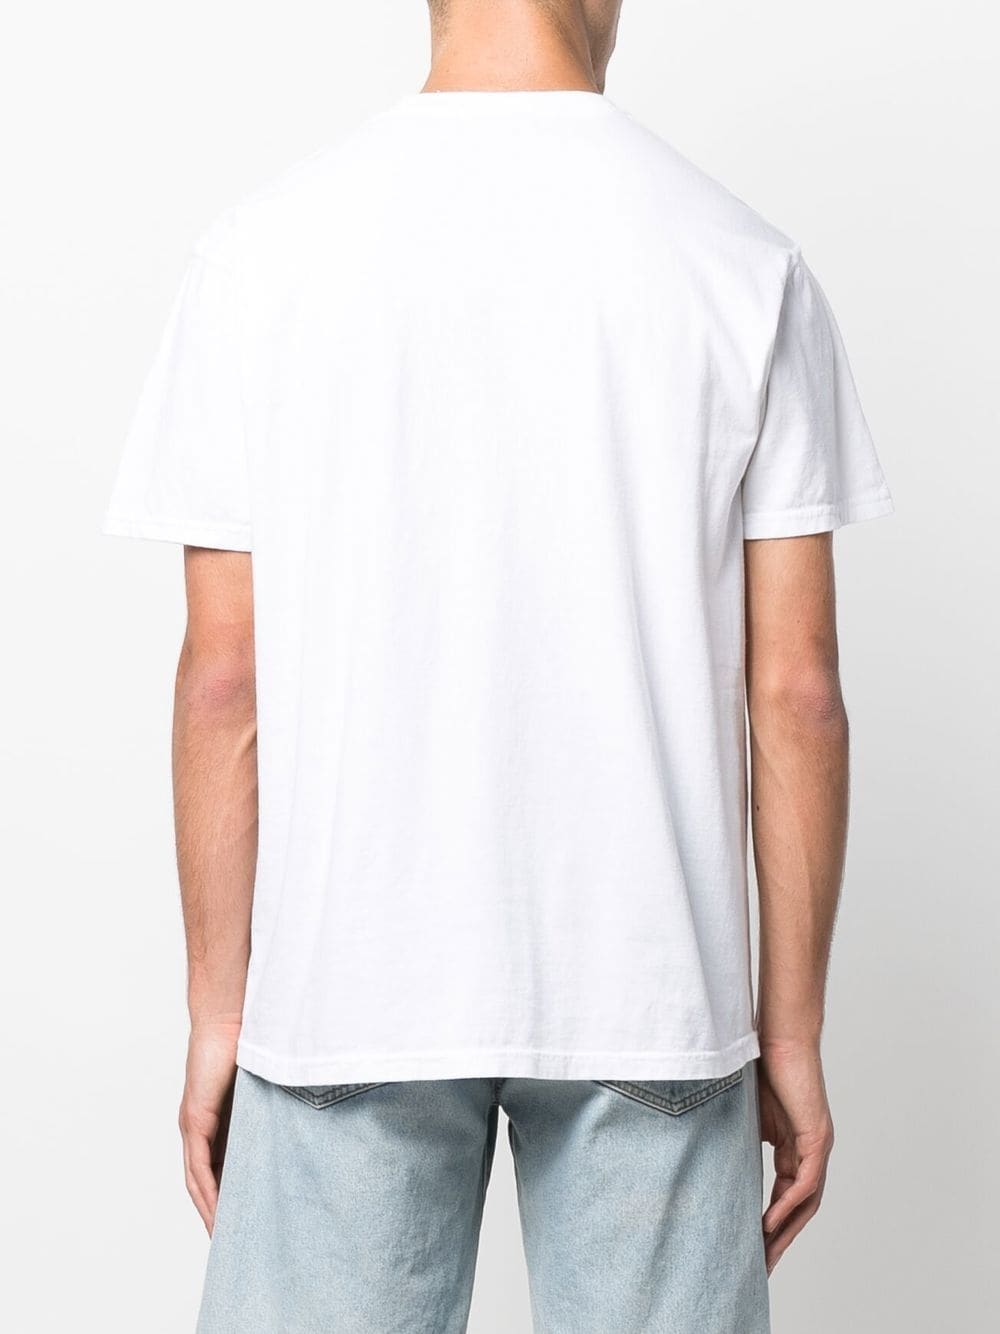 KIDSUPER Graphic-print cotton T-shirt White - MAISONDEFASHION.COM